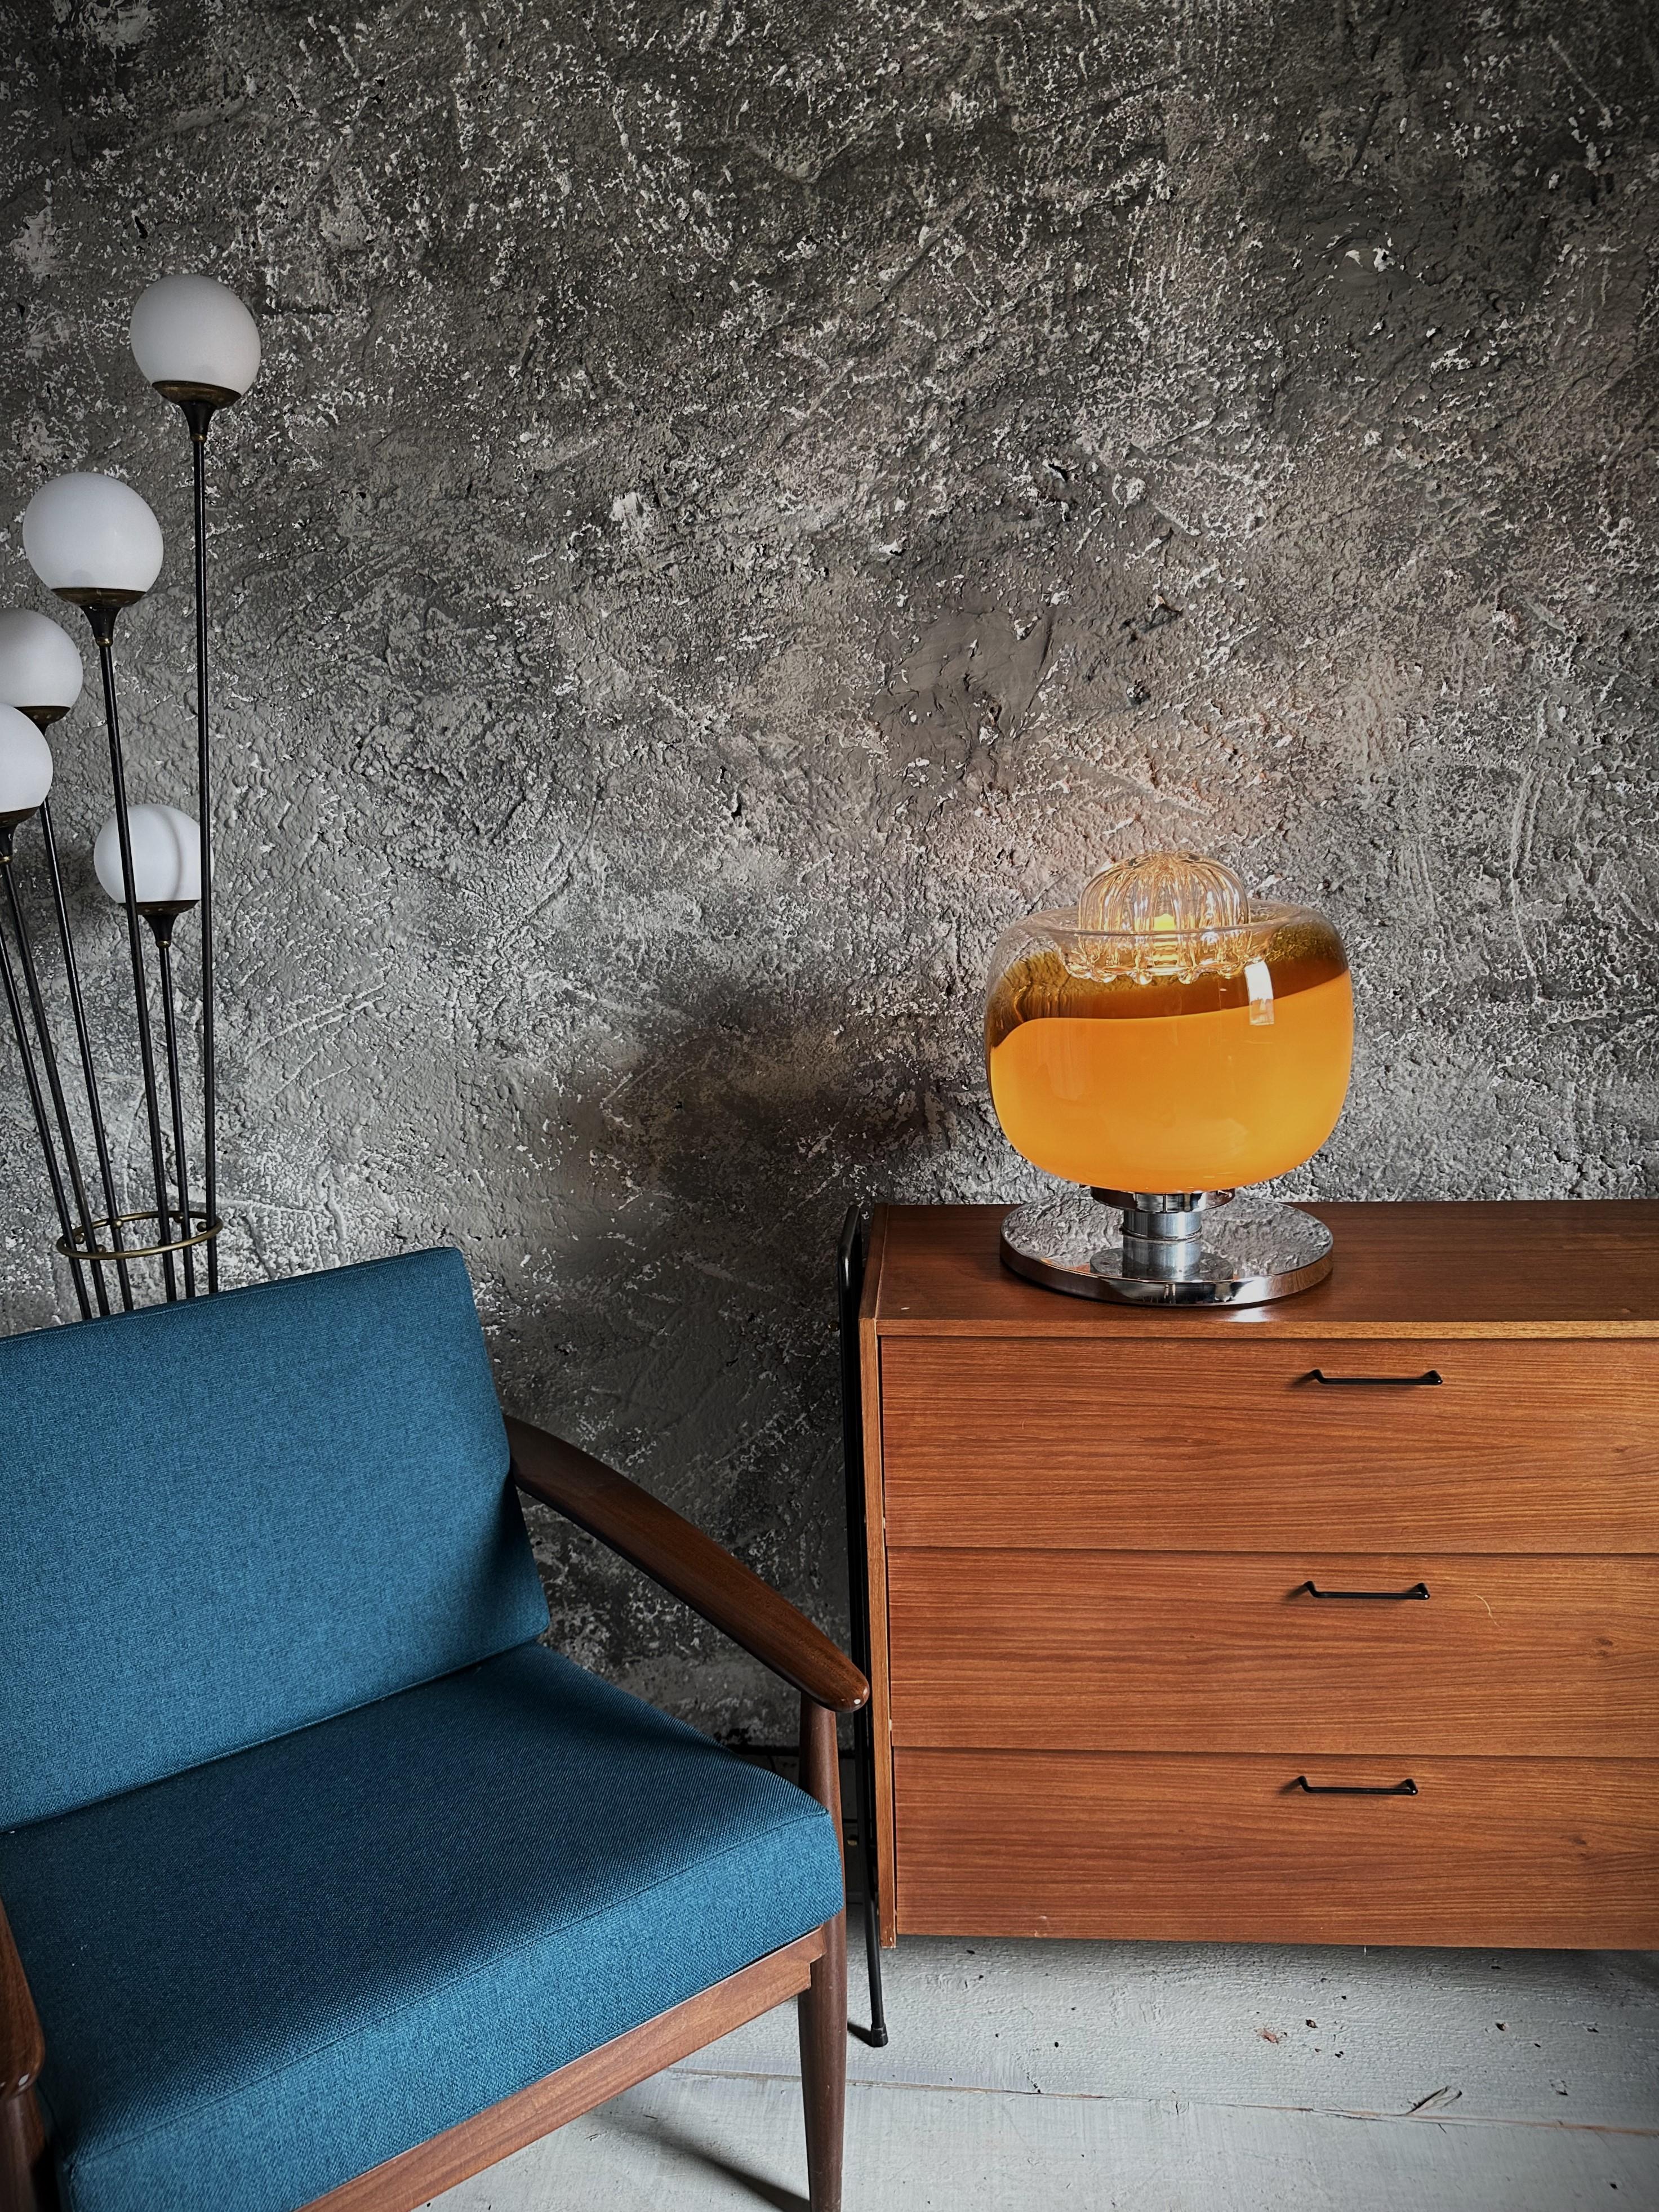 Lampadaire du milieu du siècle Nason for Mazzega, Murano Glass, Italy 1960.
des couleurs et des formes de verre très extra ordinaires.
chrome en bon état vintage.
Bigli.
Une douille e27.